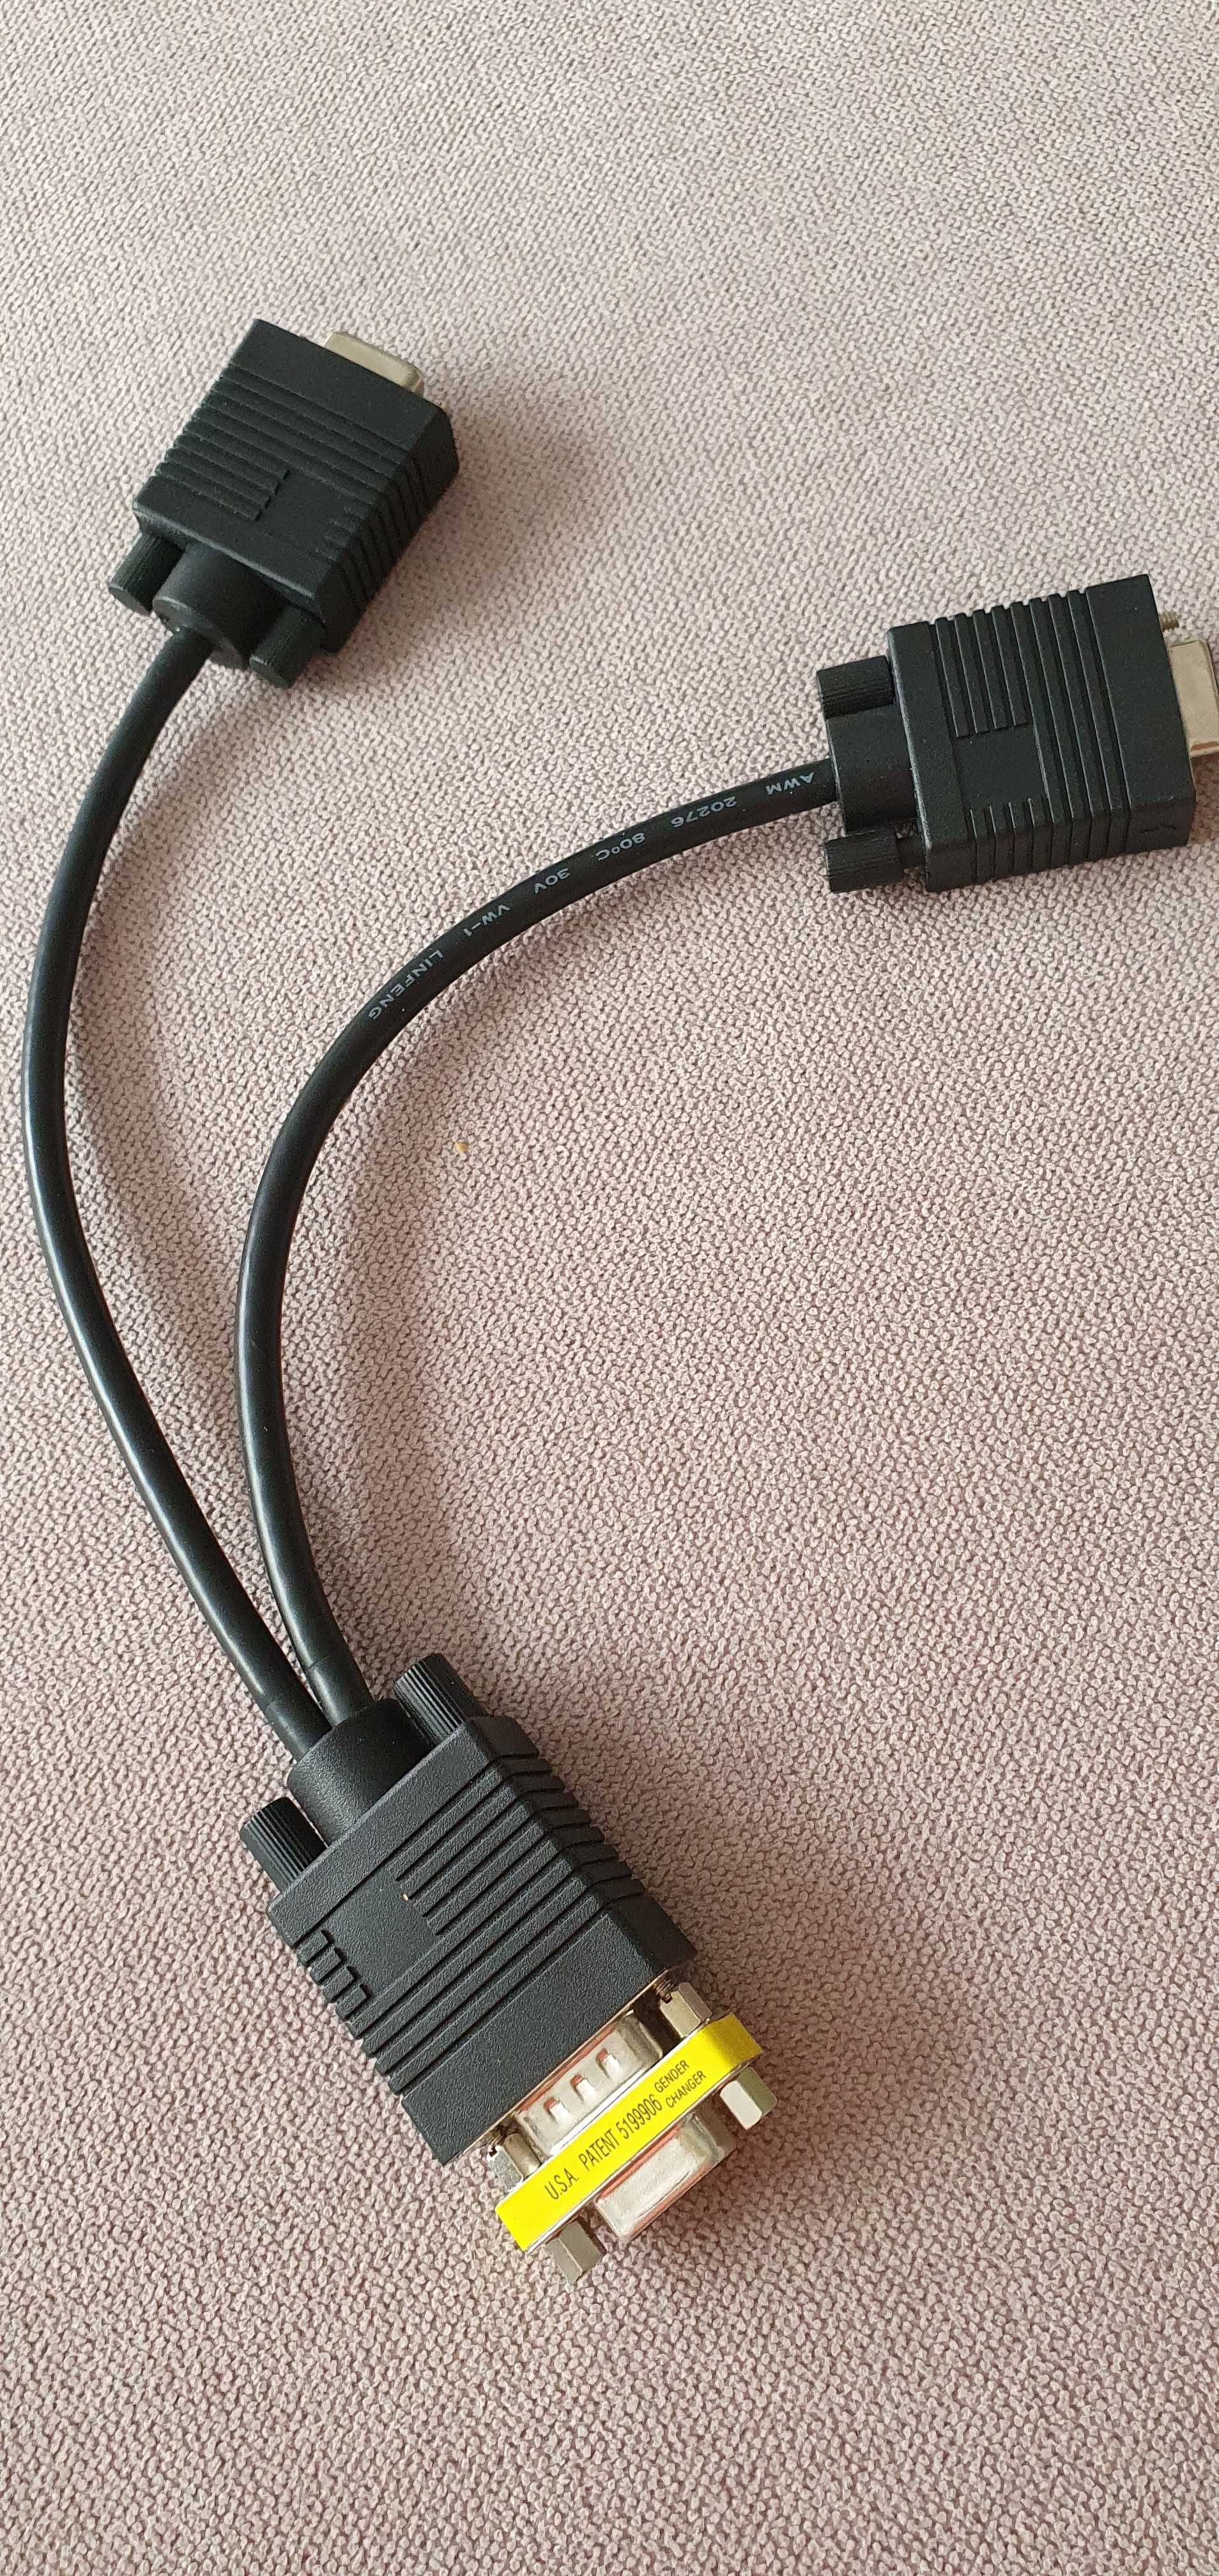 Kabel VGA – VGA2 + gratis vga gender changer